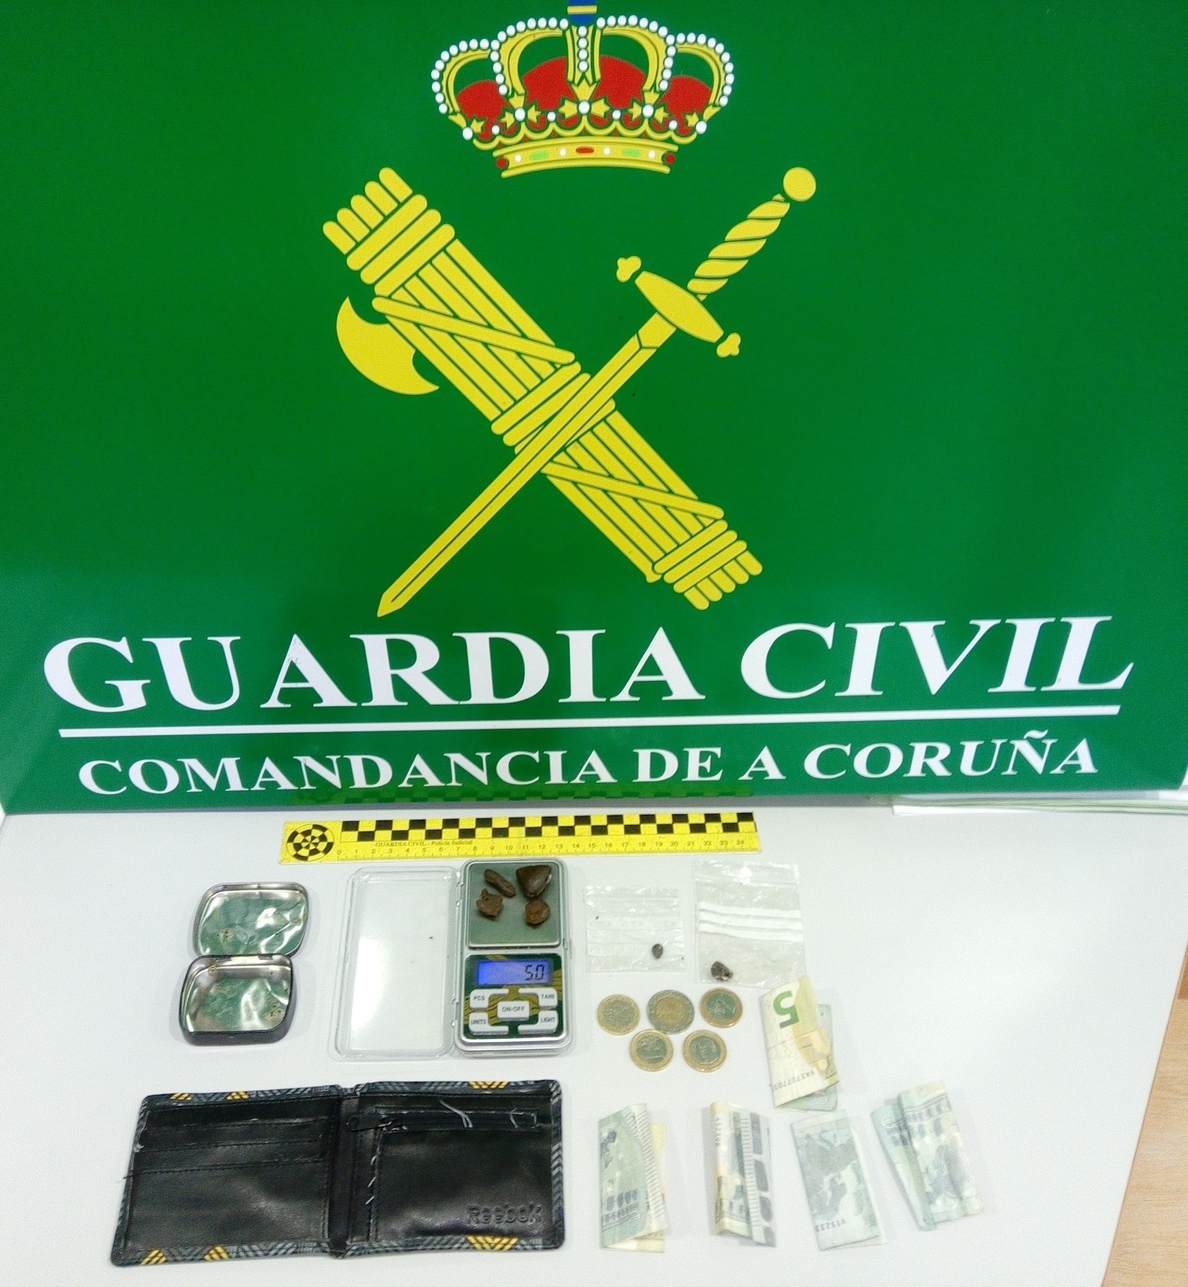 La Guardia Civil detiene a un joven en Boiro (A Coruña) acusado de traficar droga cerca de un centro escolar